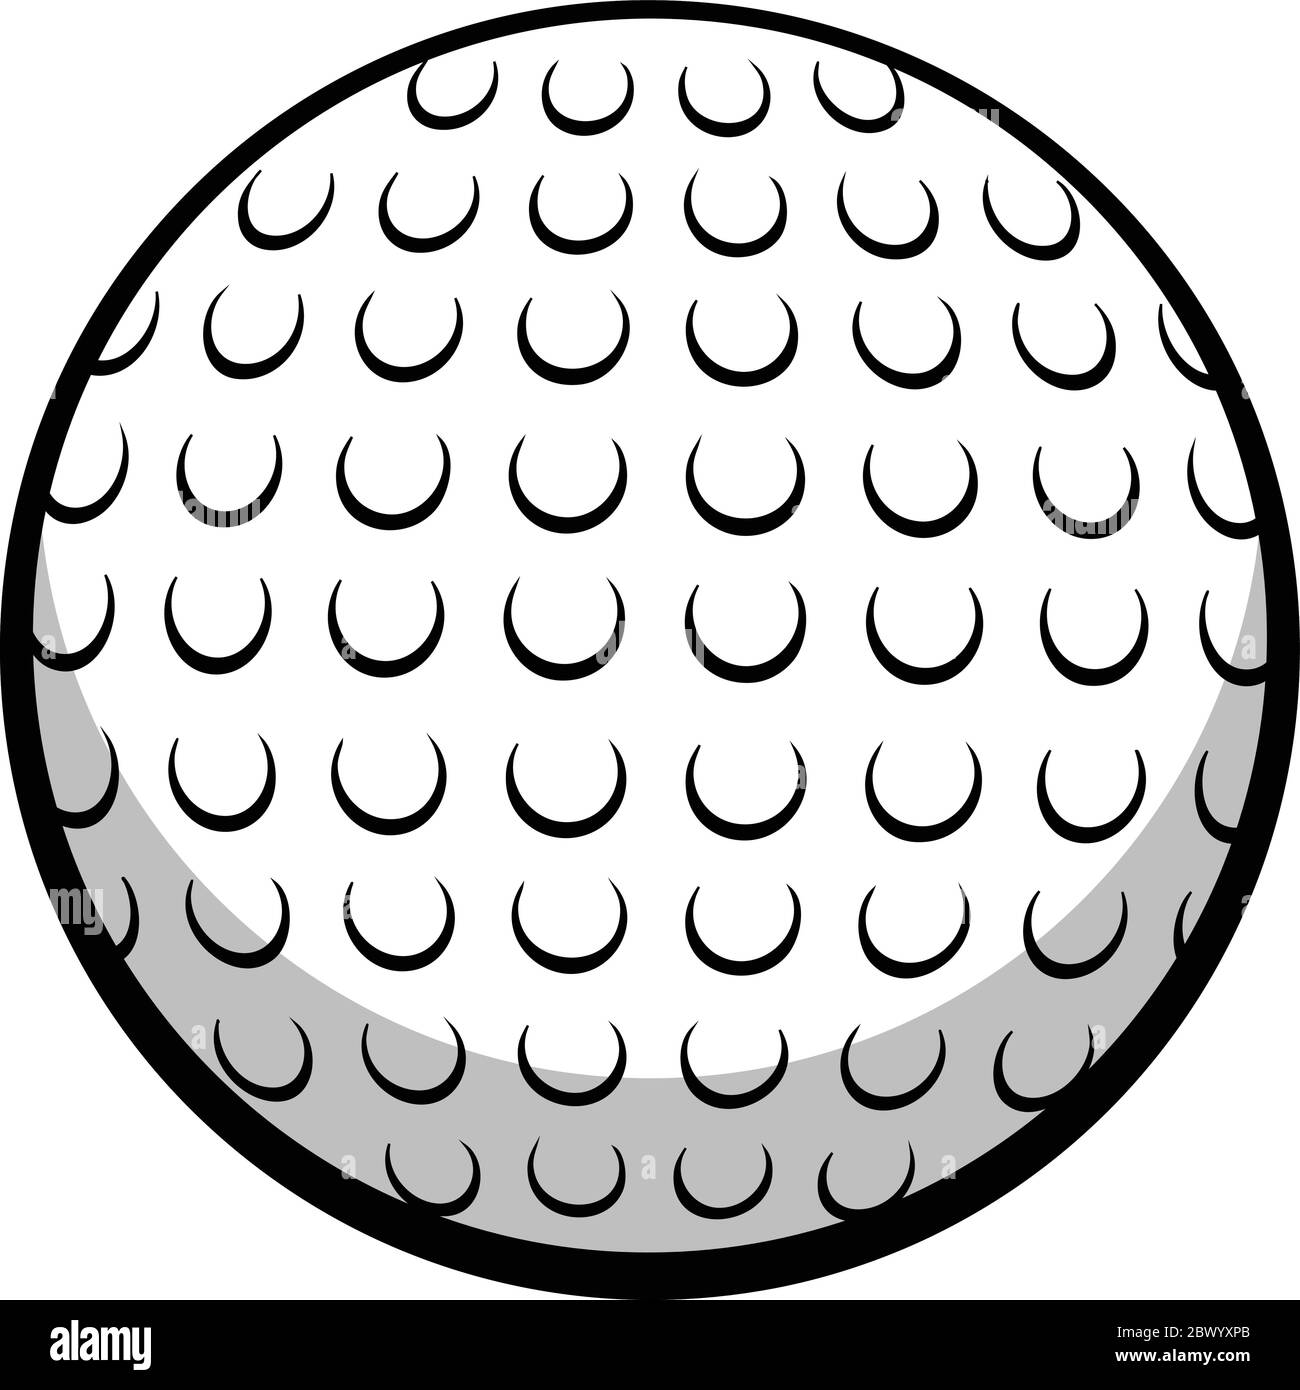 Balle de golf - UNE illustration de dessin animé d'une balle de golf Image  Vectorielle Stock - Alamy